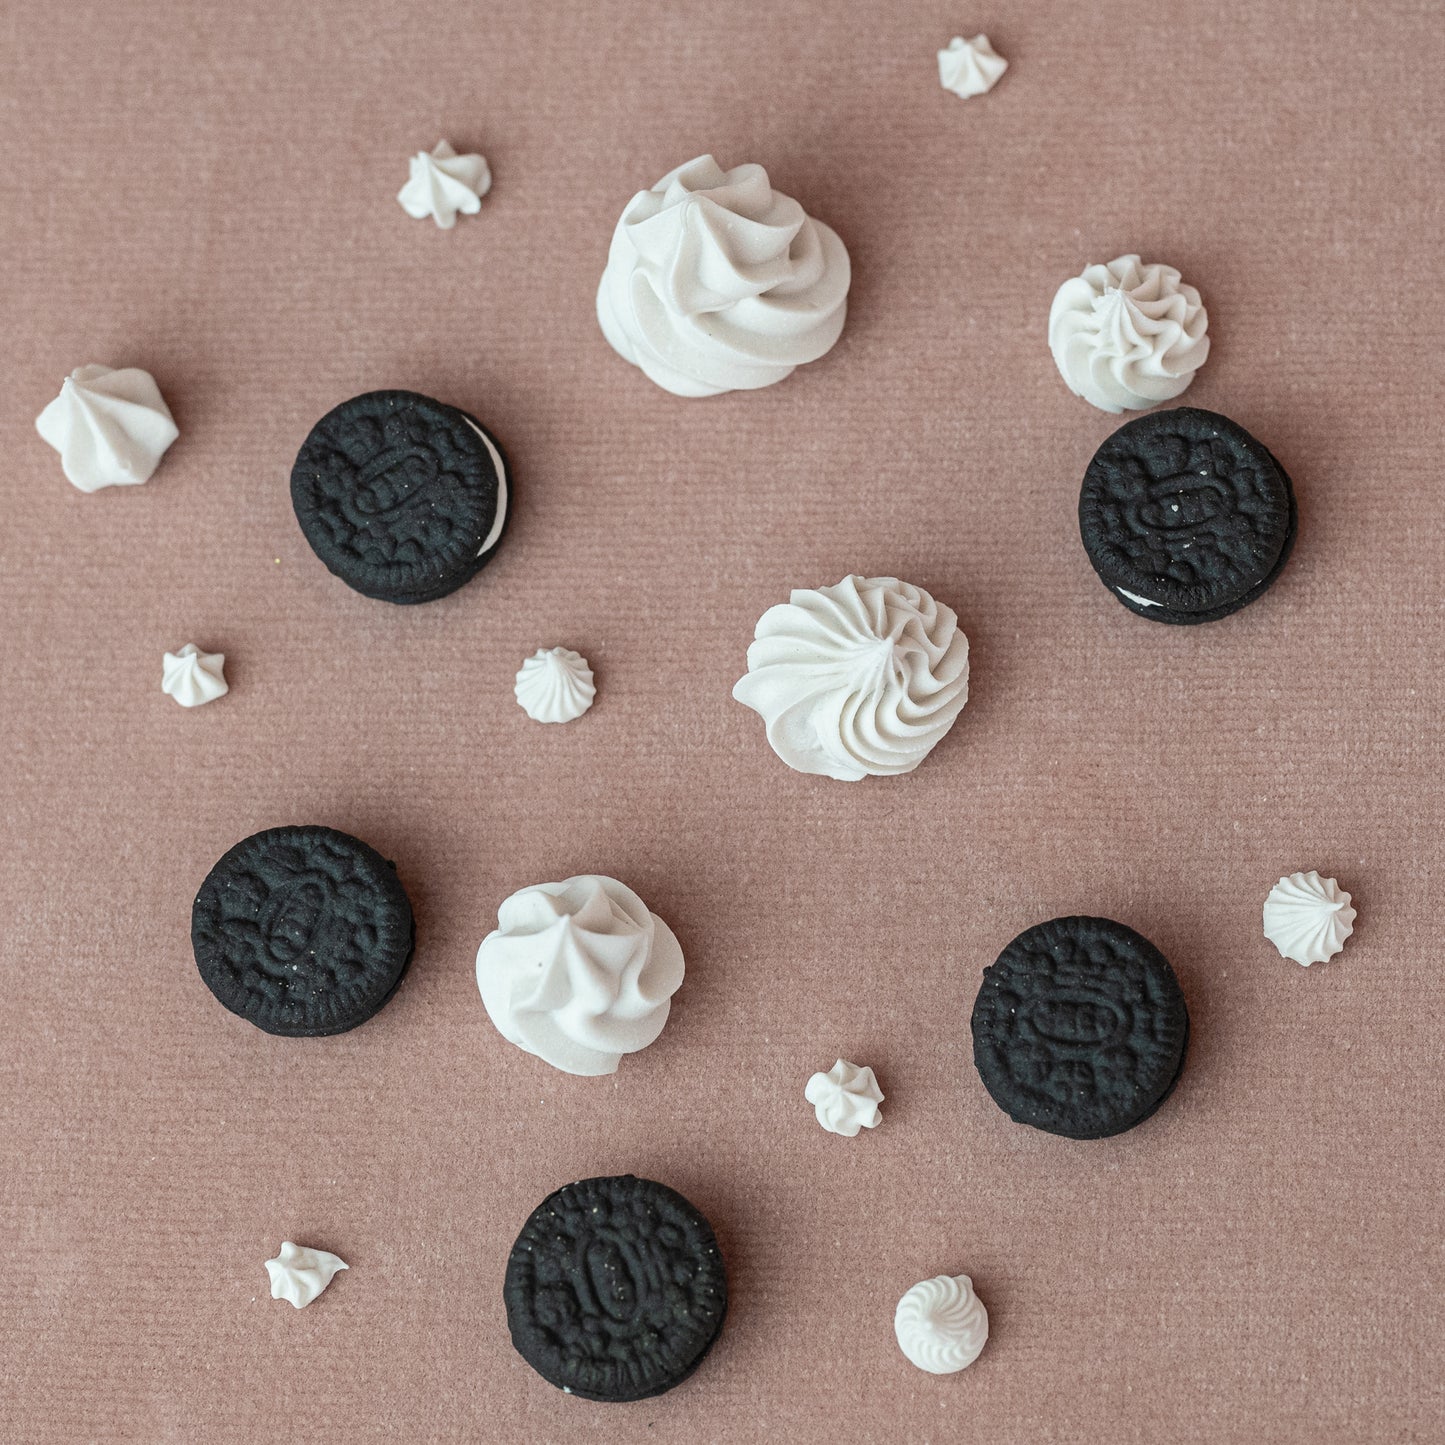 Handful of Ceramic Confetti - Cookies and Cream